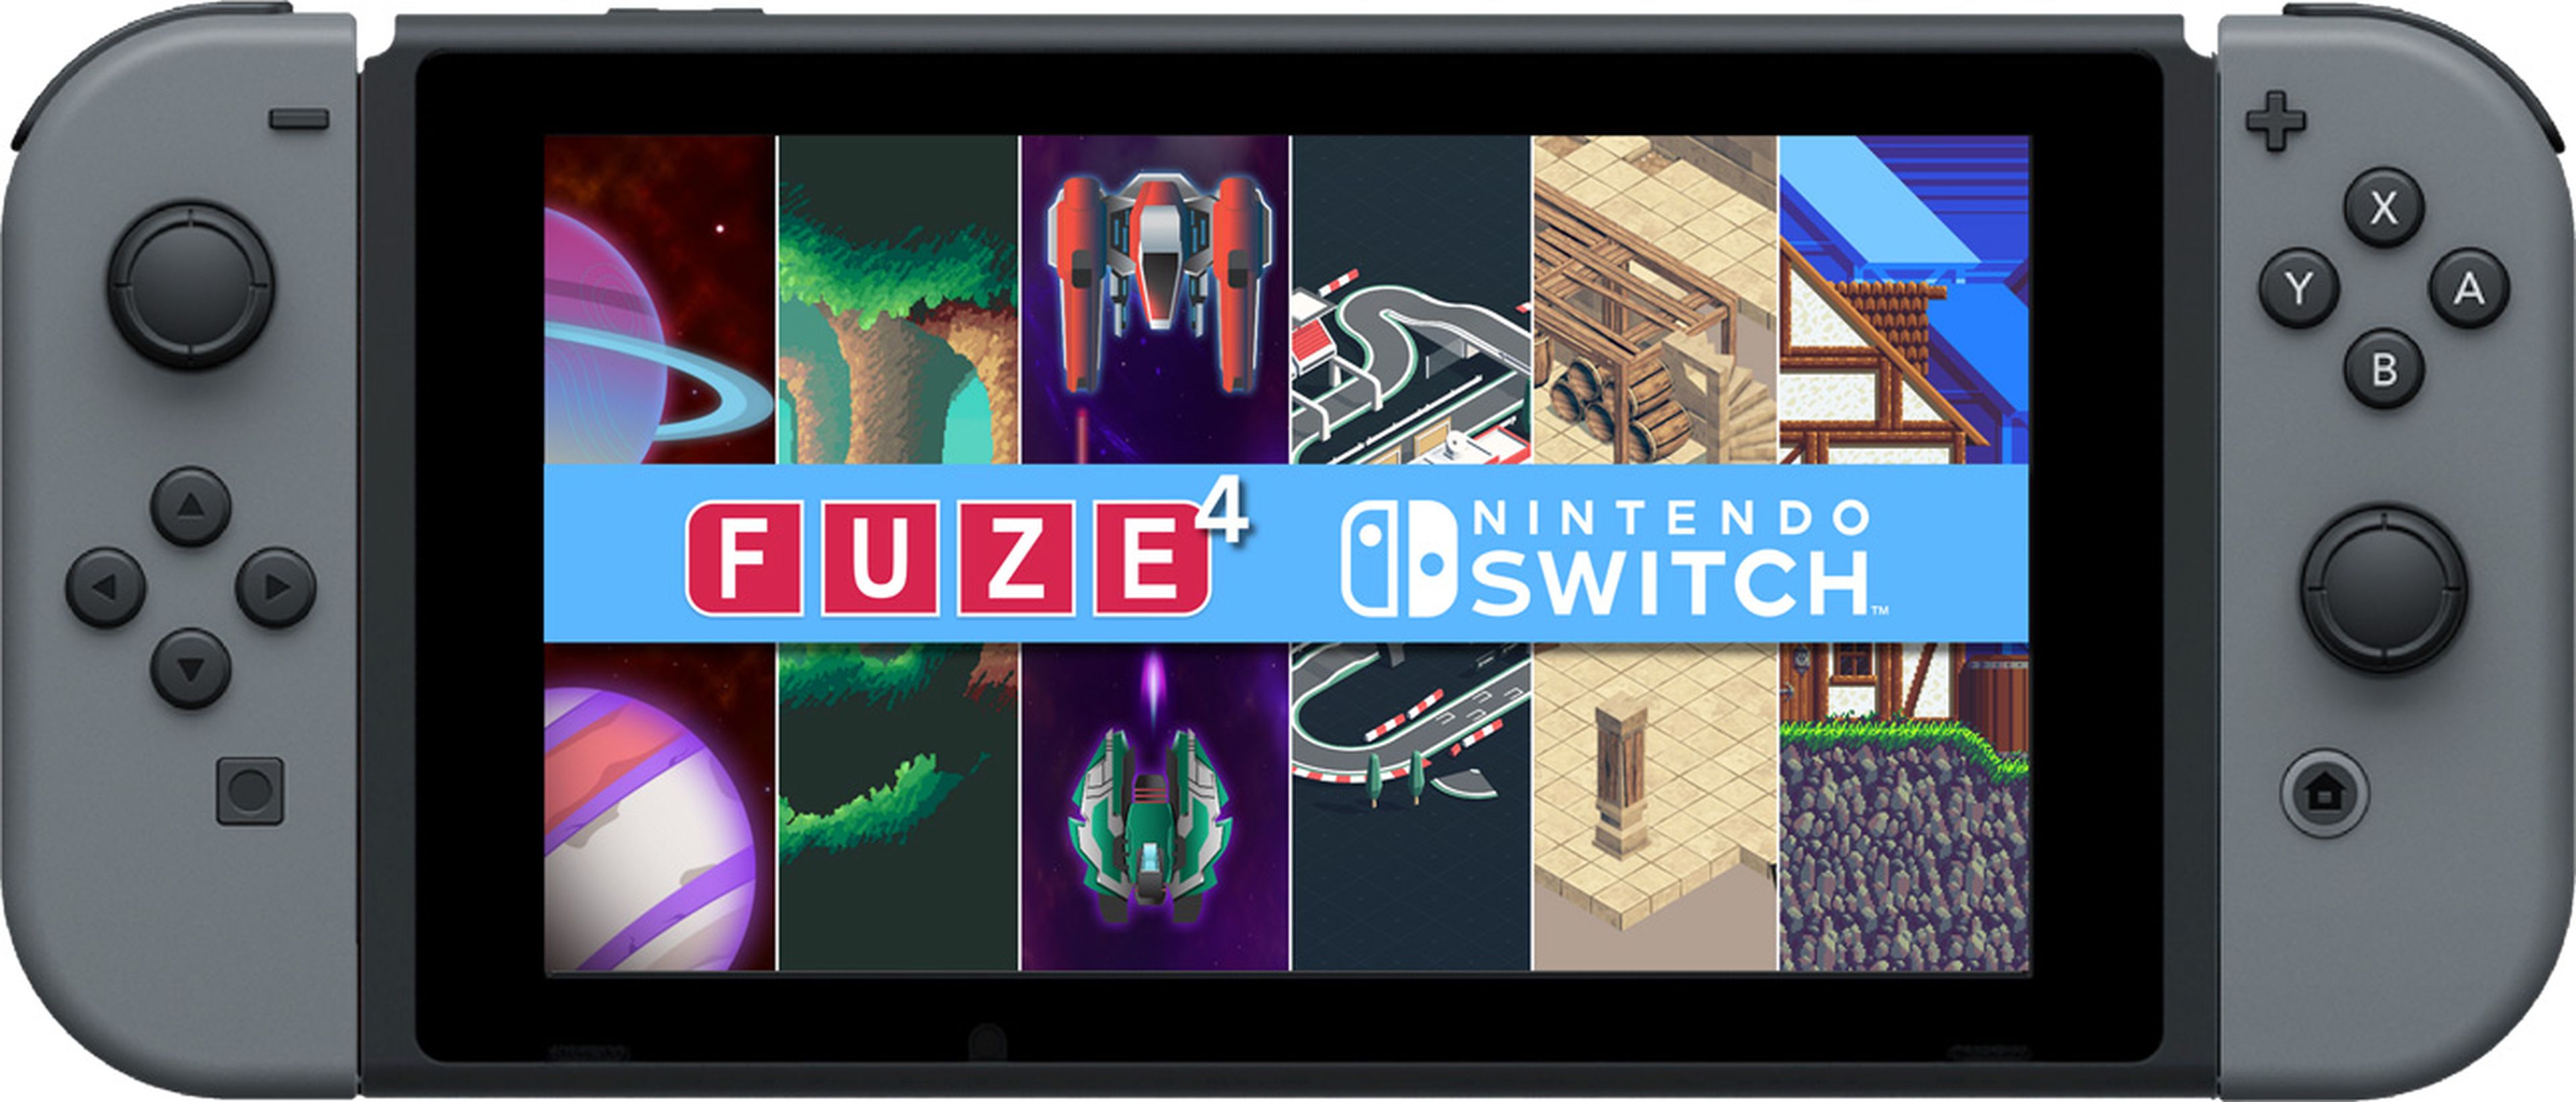 Switch FUZE 3